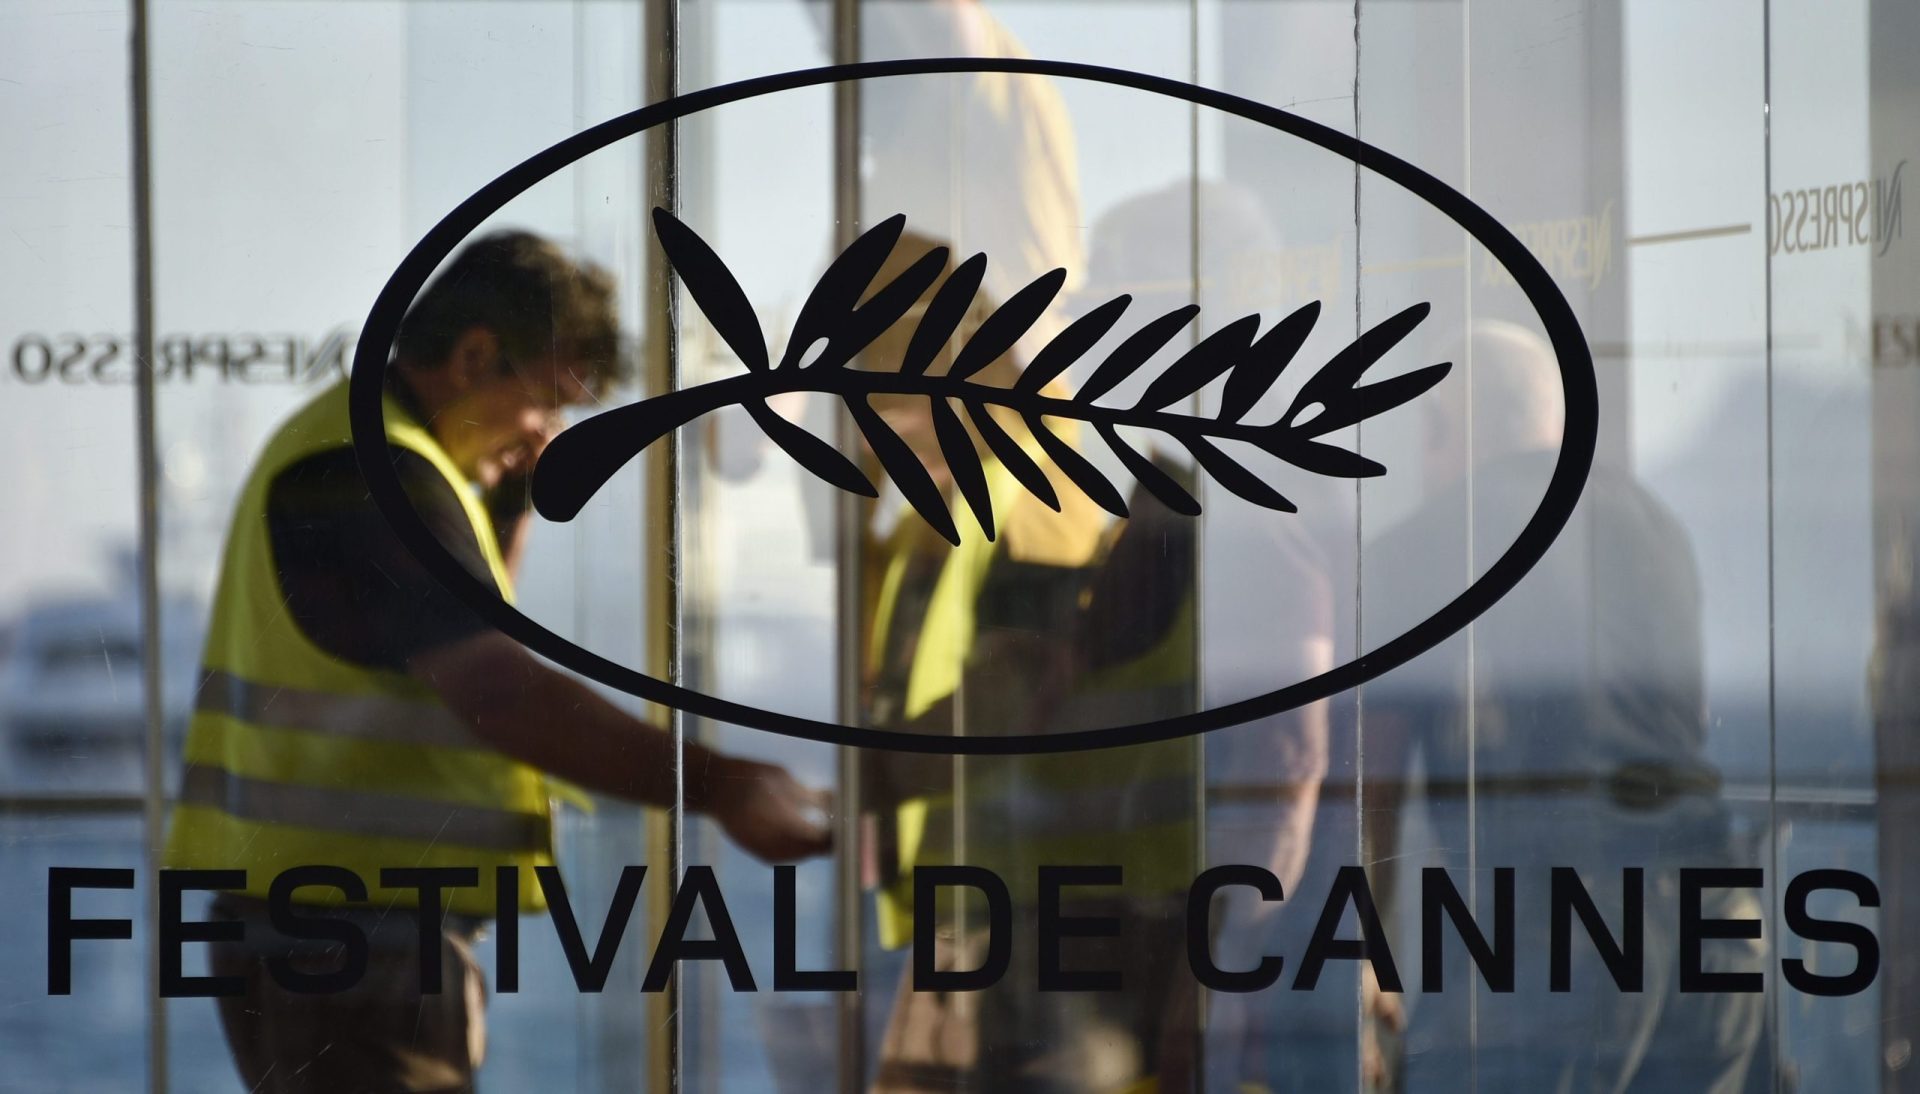 Festival de Cannes começa esta quarta-feira